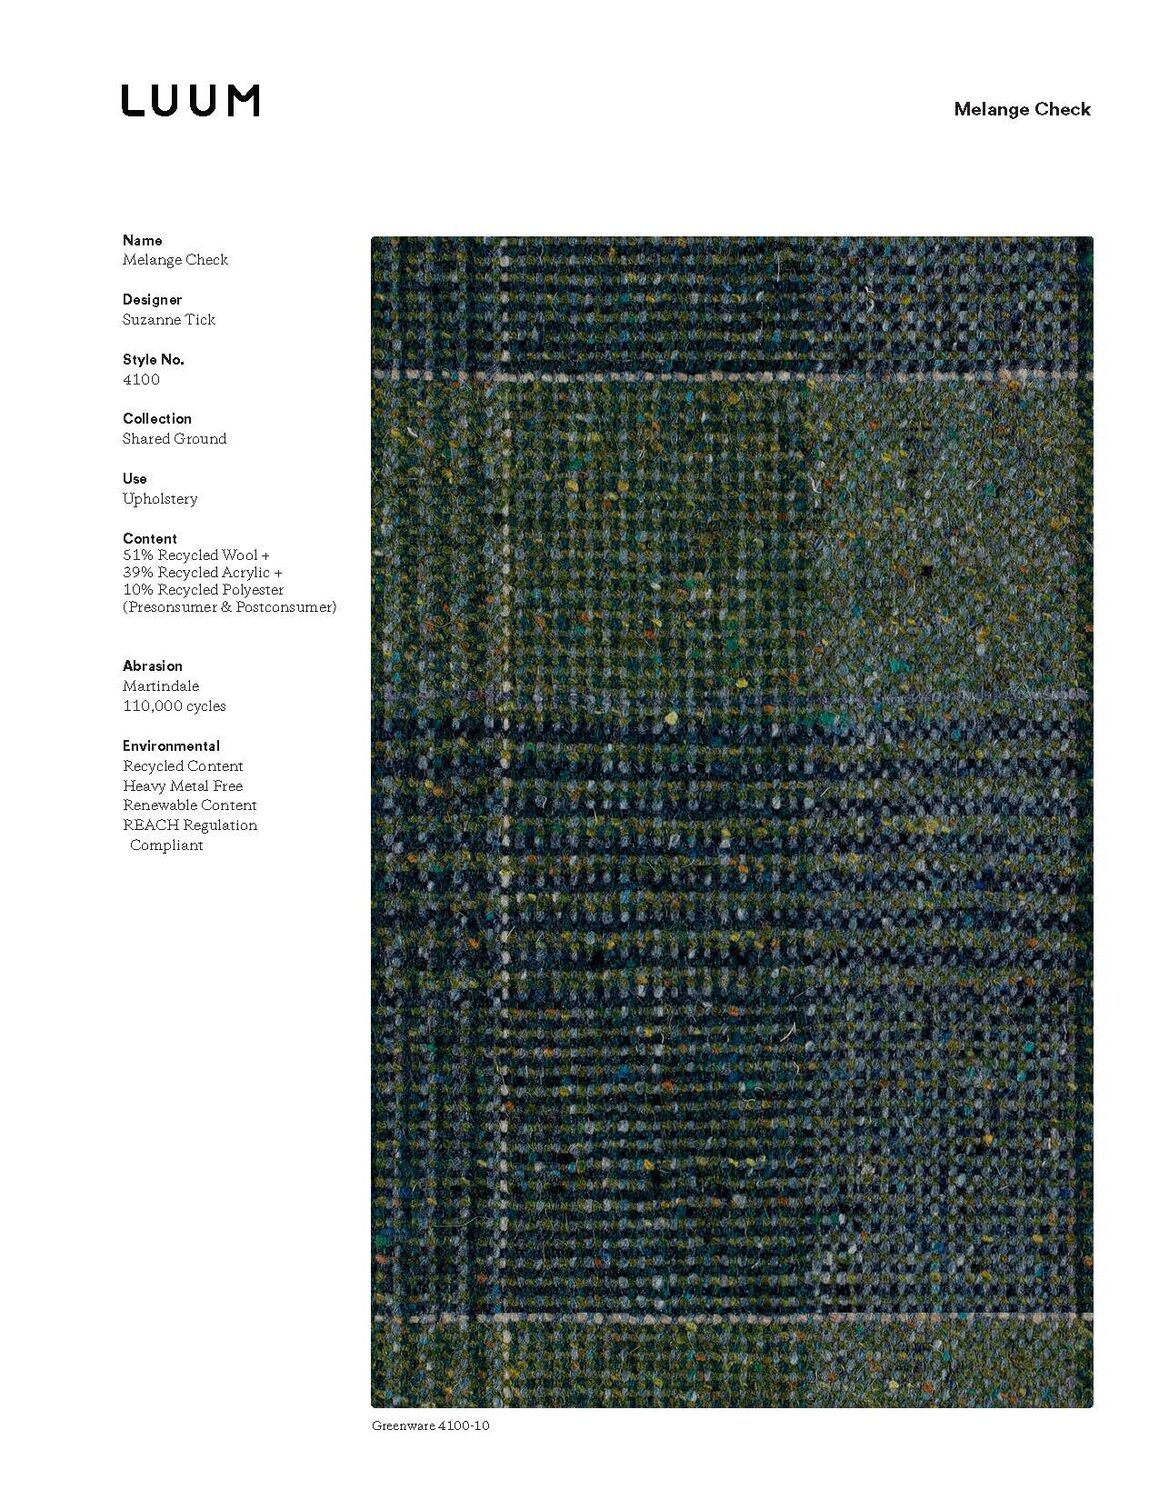 Melange Check - Vapor Glaze - 4100 - 08 Sample Card